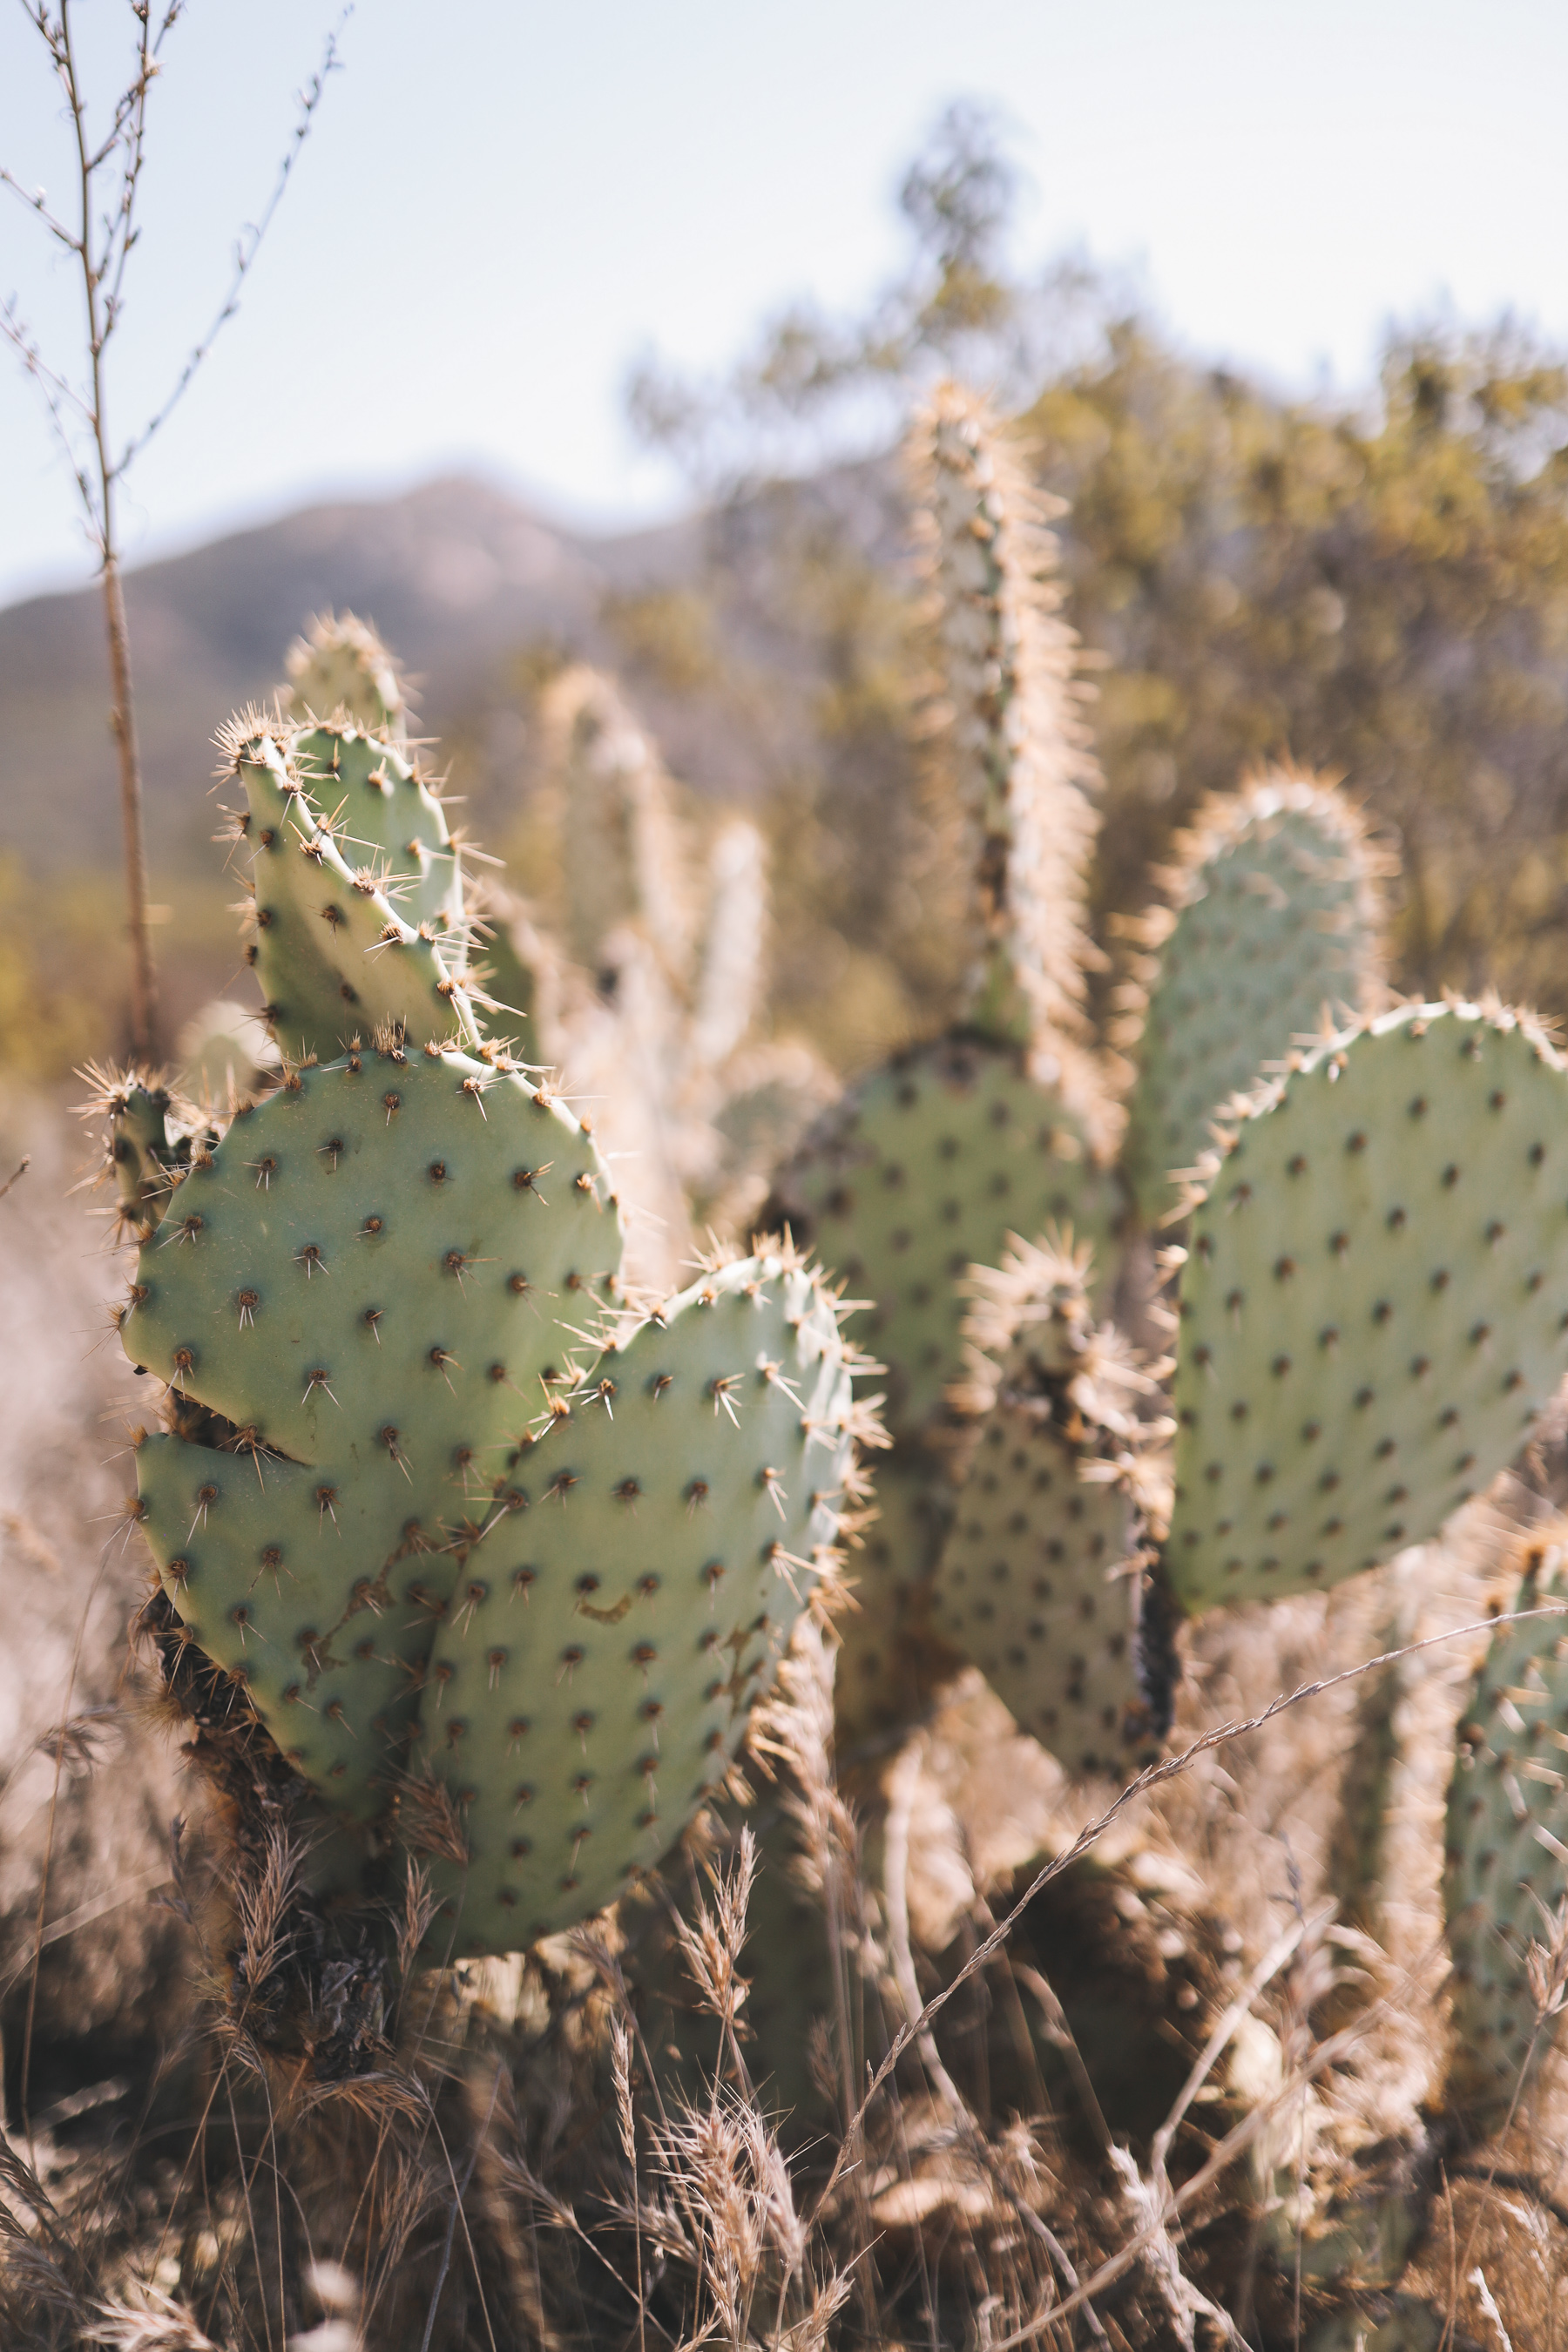 Iron Mountain cactus